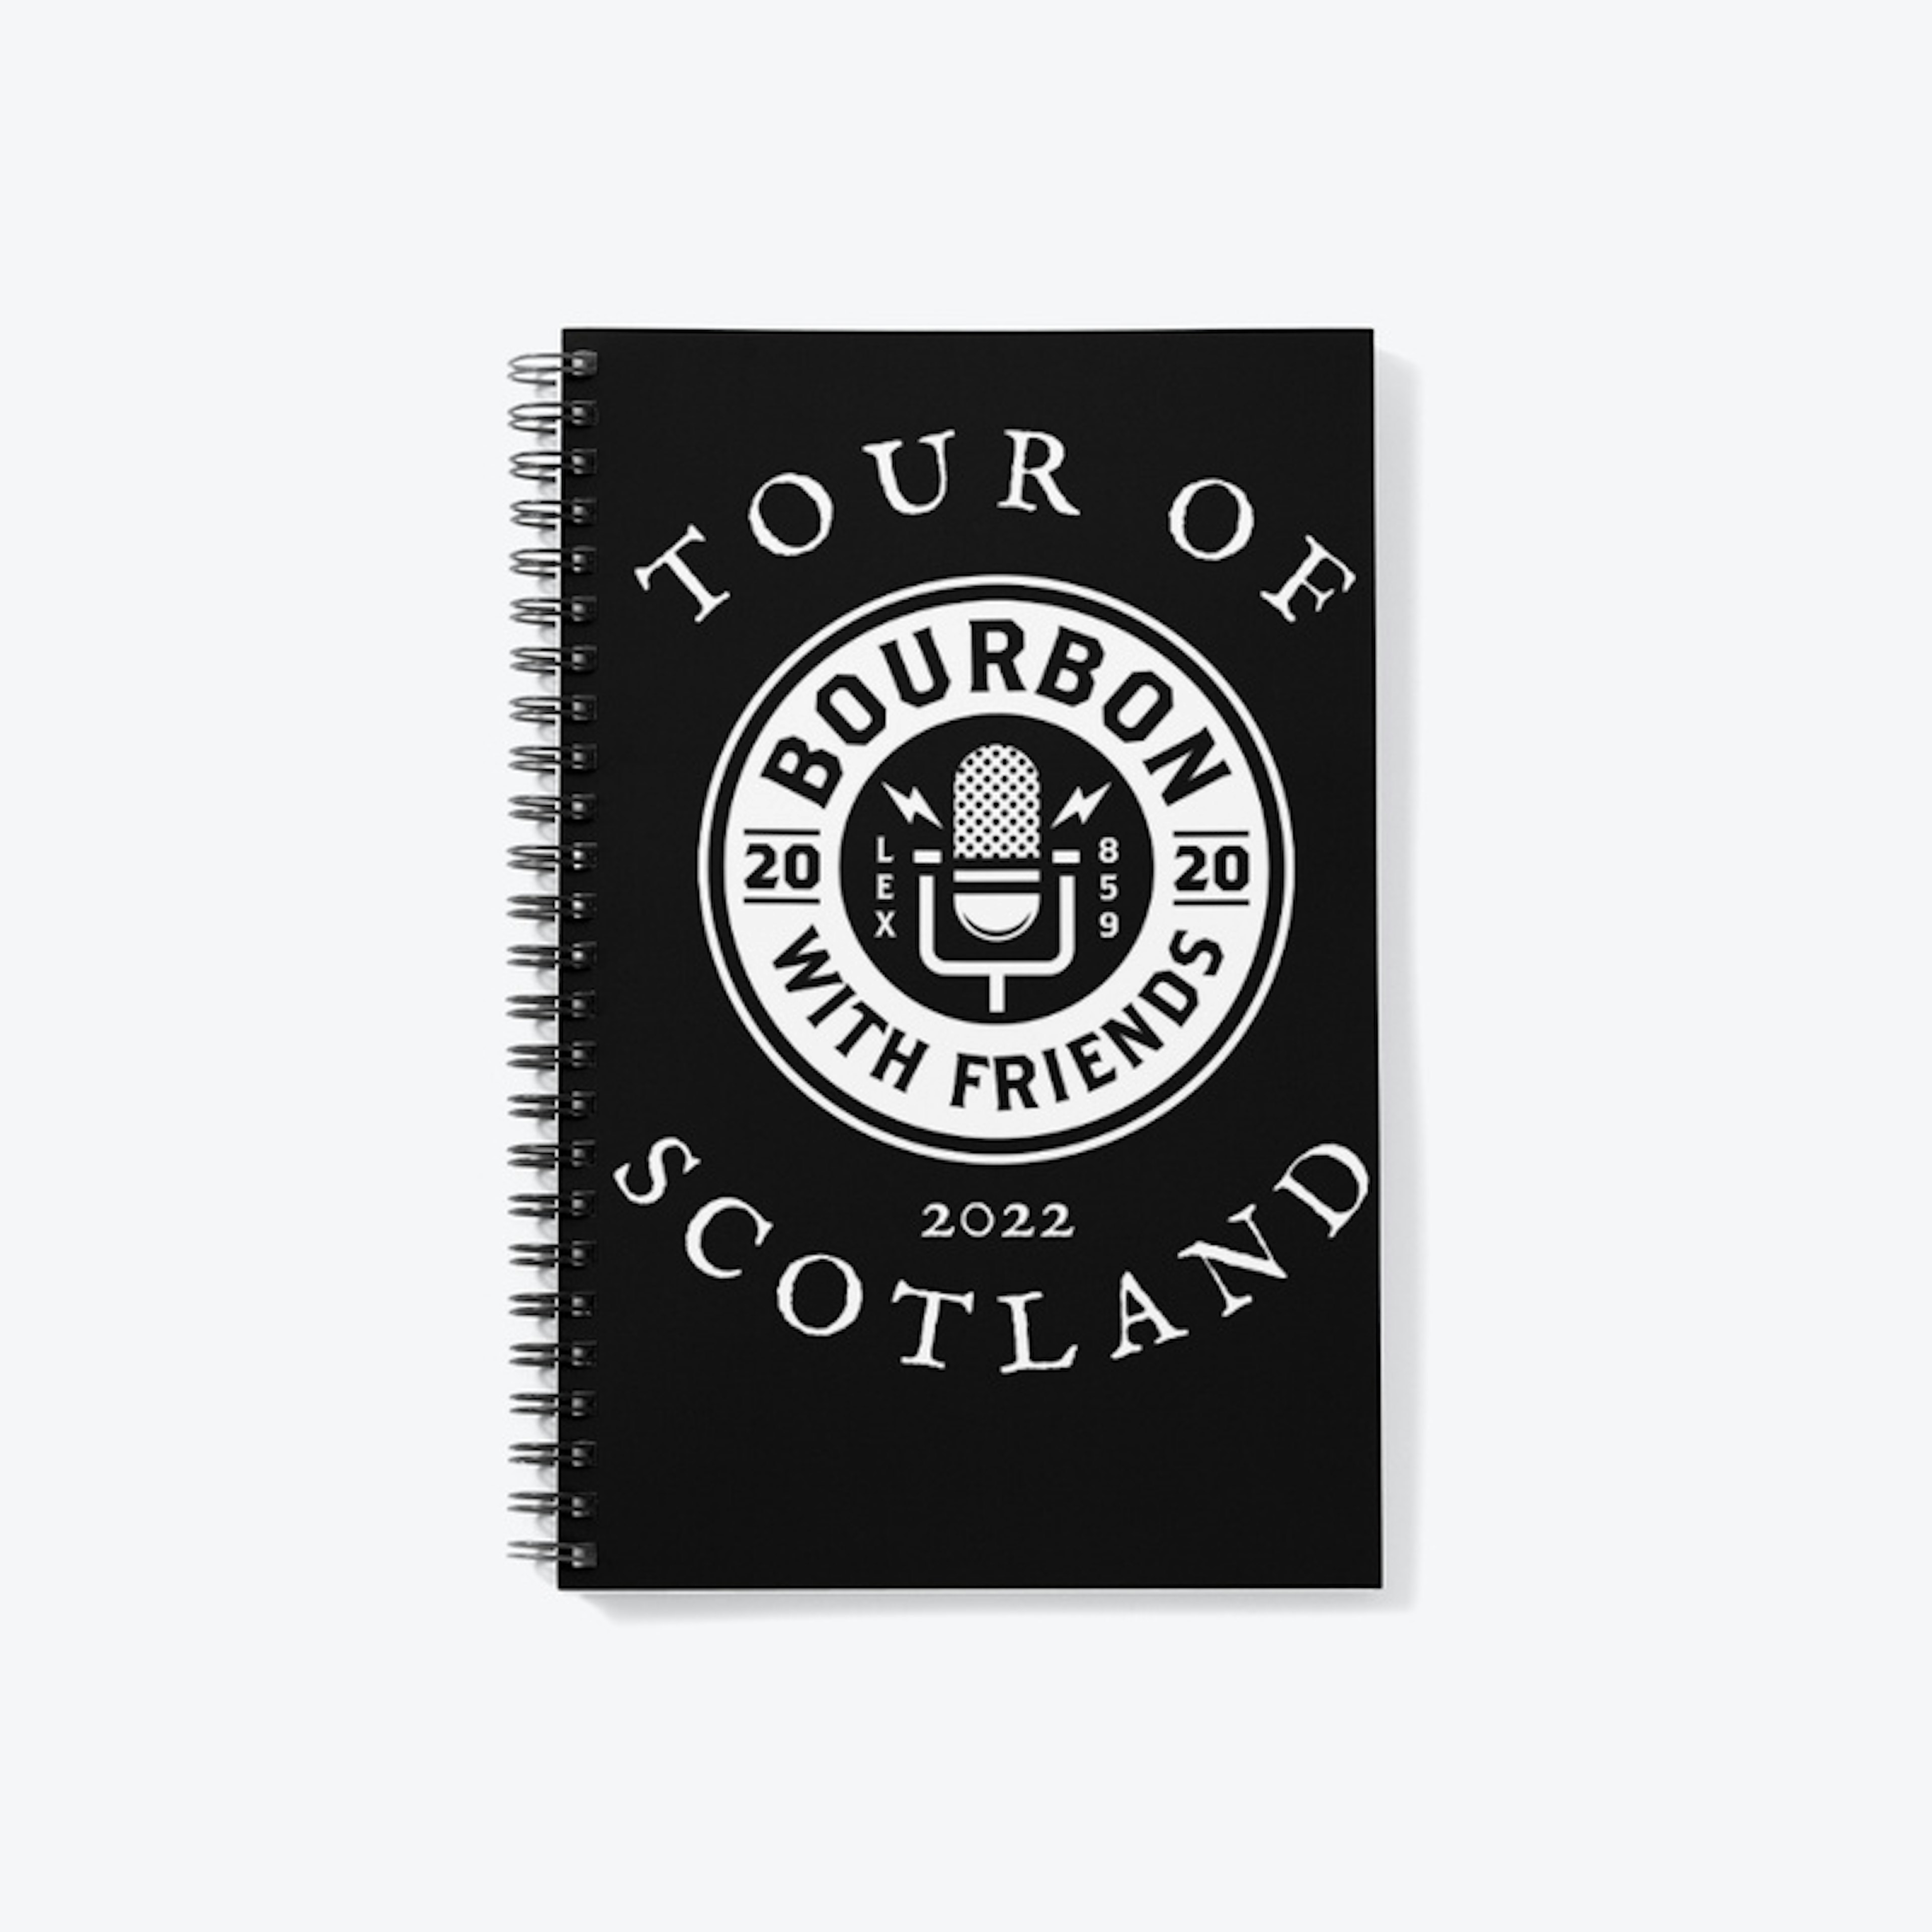 Tour Of Scotland 2022